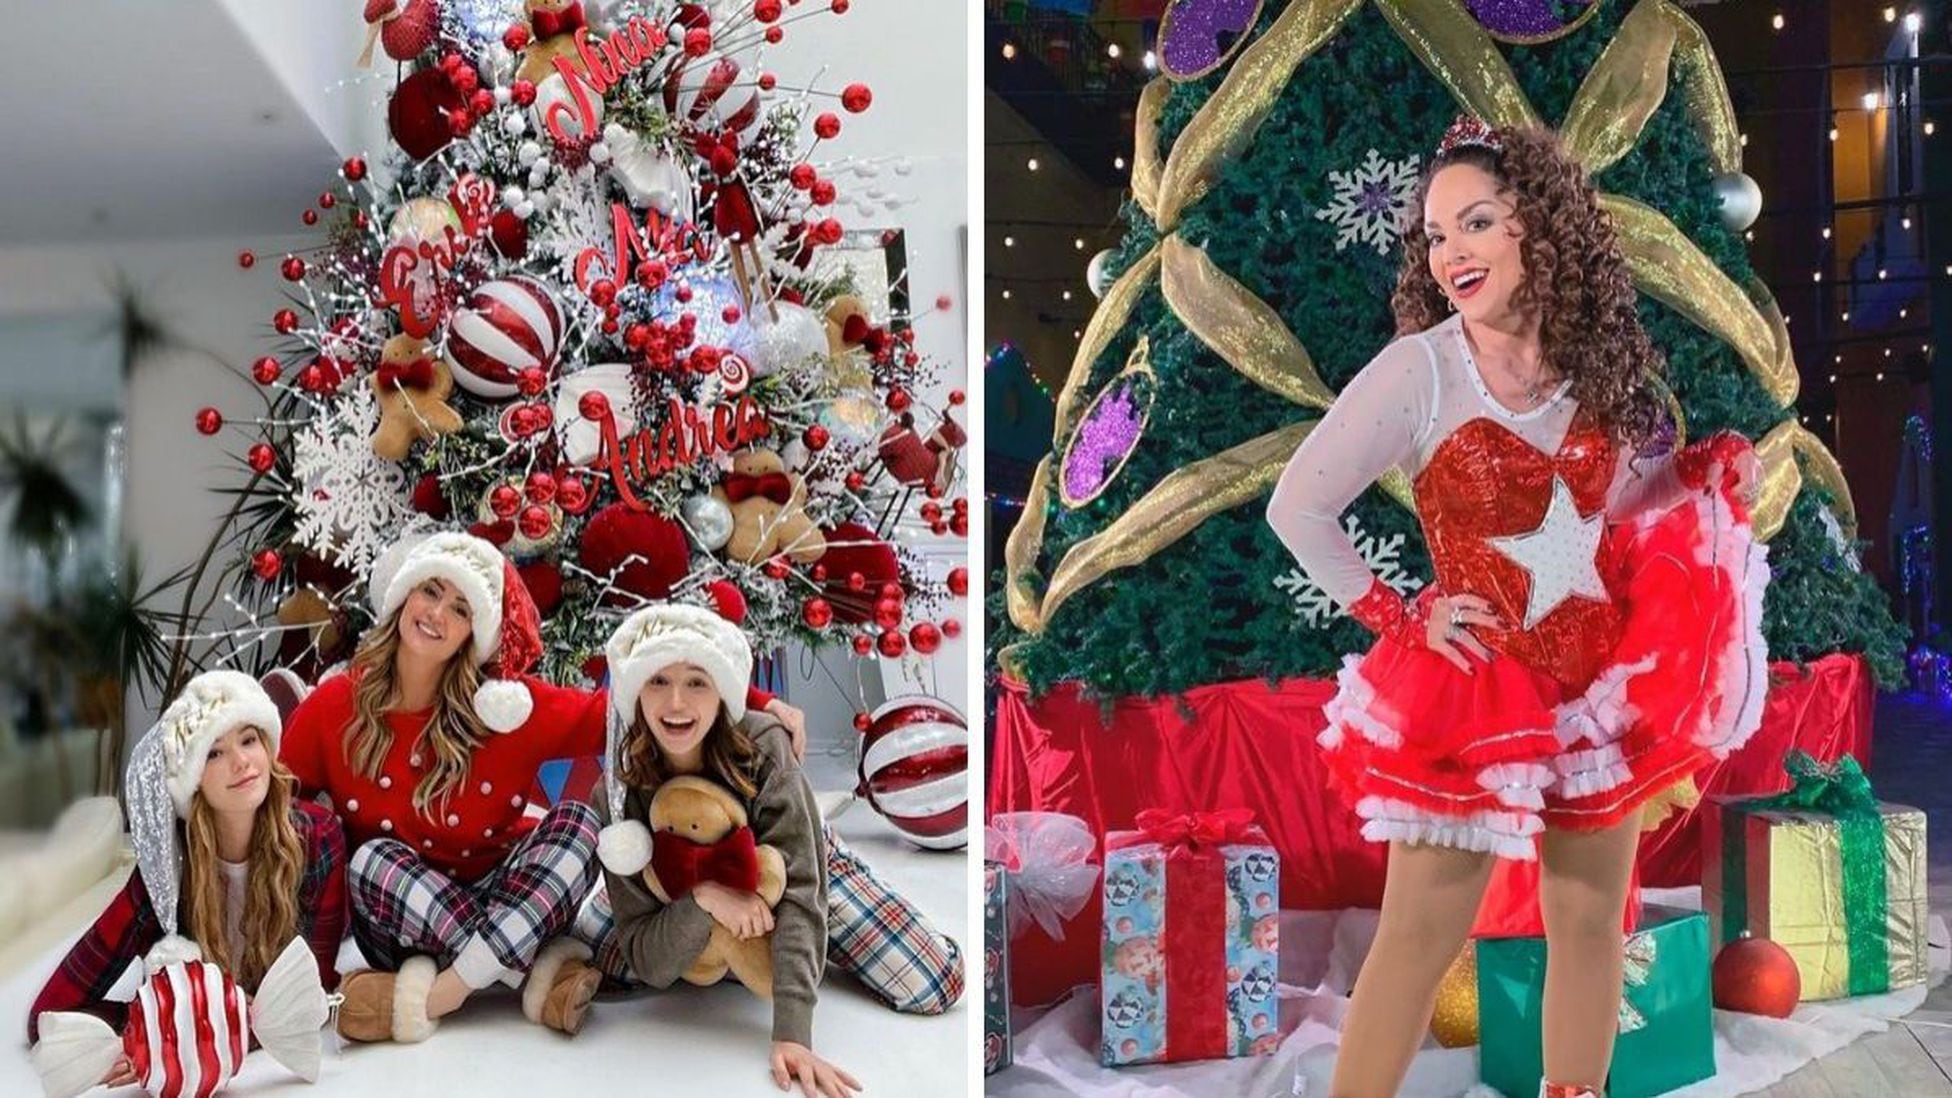 Andrea Legarreta, Tatiana y más famosos comparten su decoración navideña -  Tikitakas